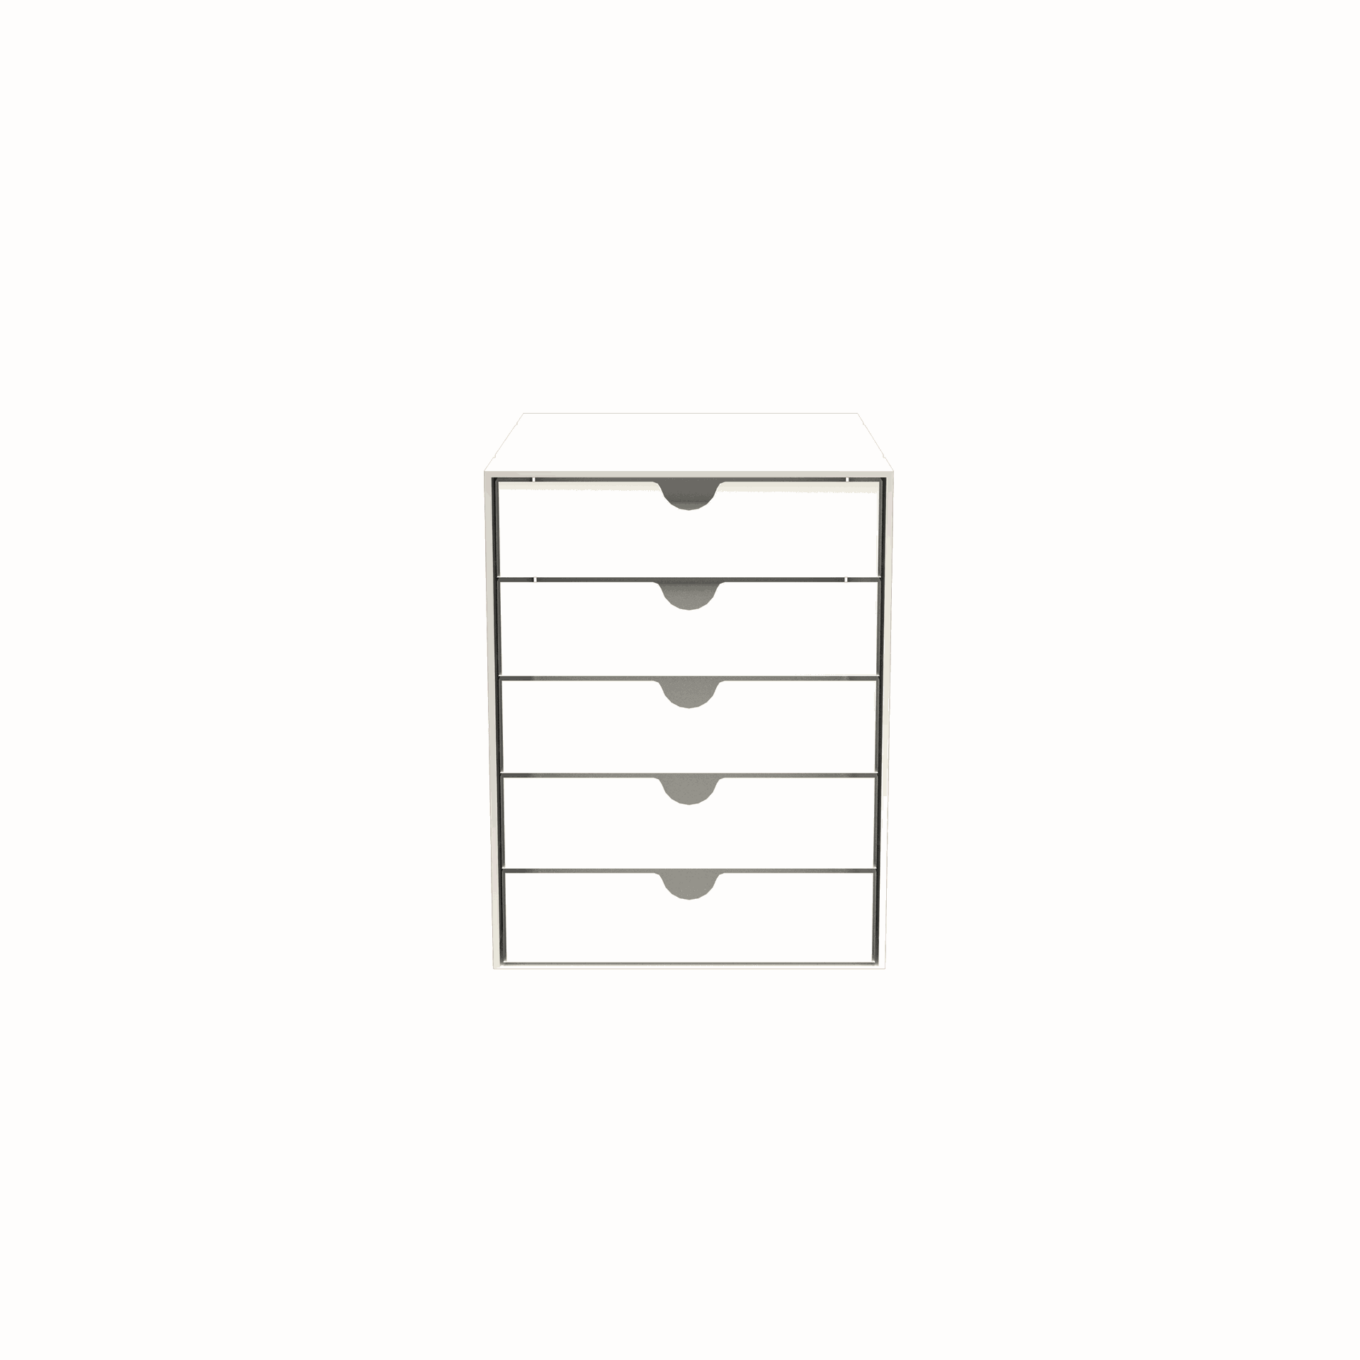 USM boîte Inos – 5 tiroirs - Image #9